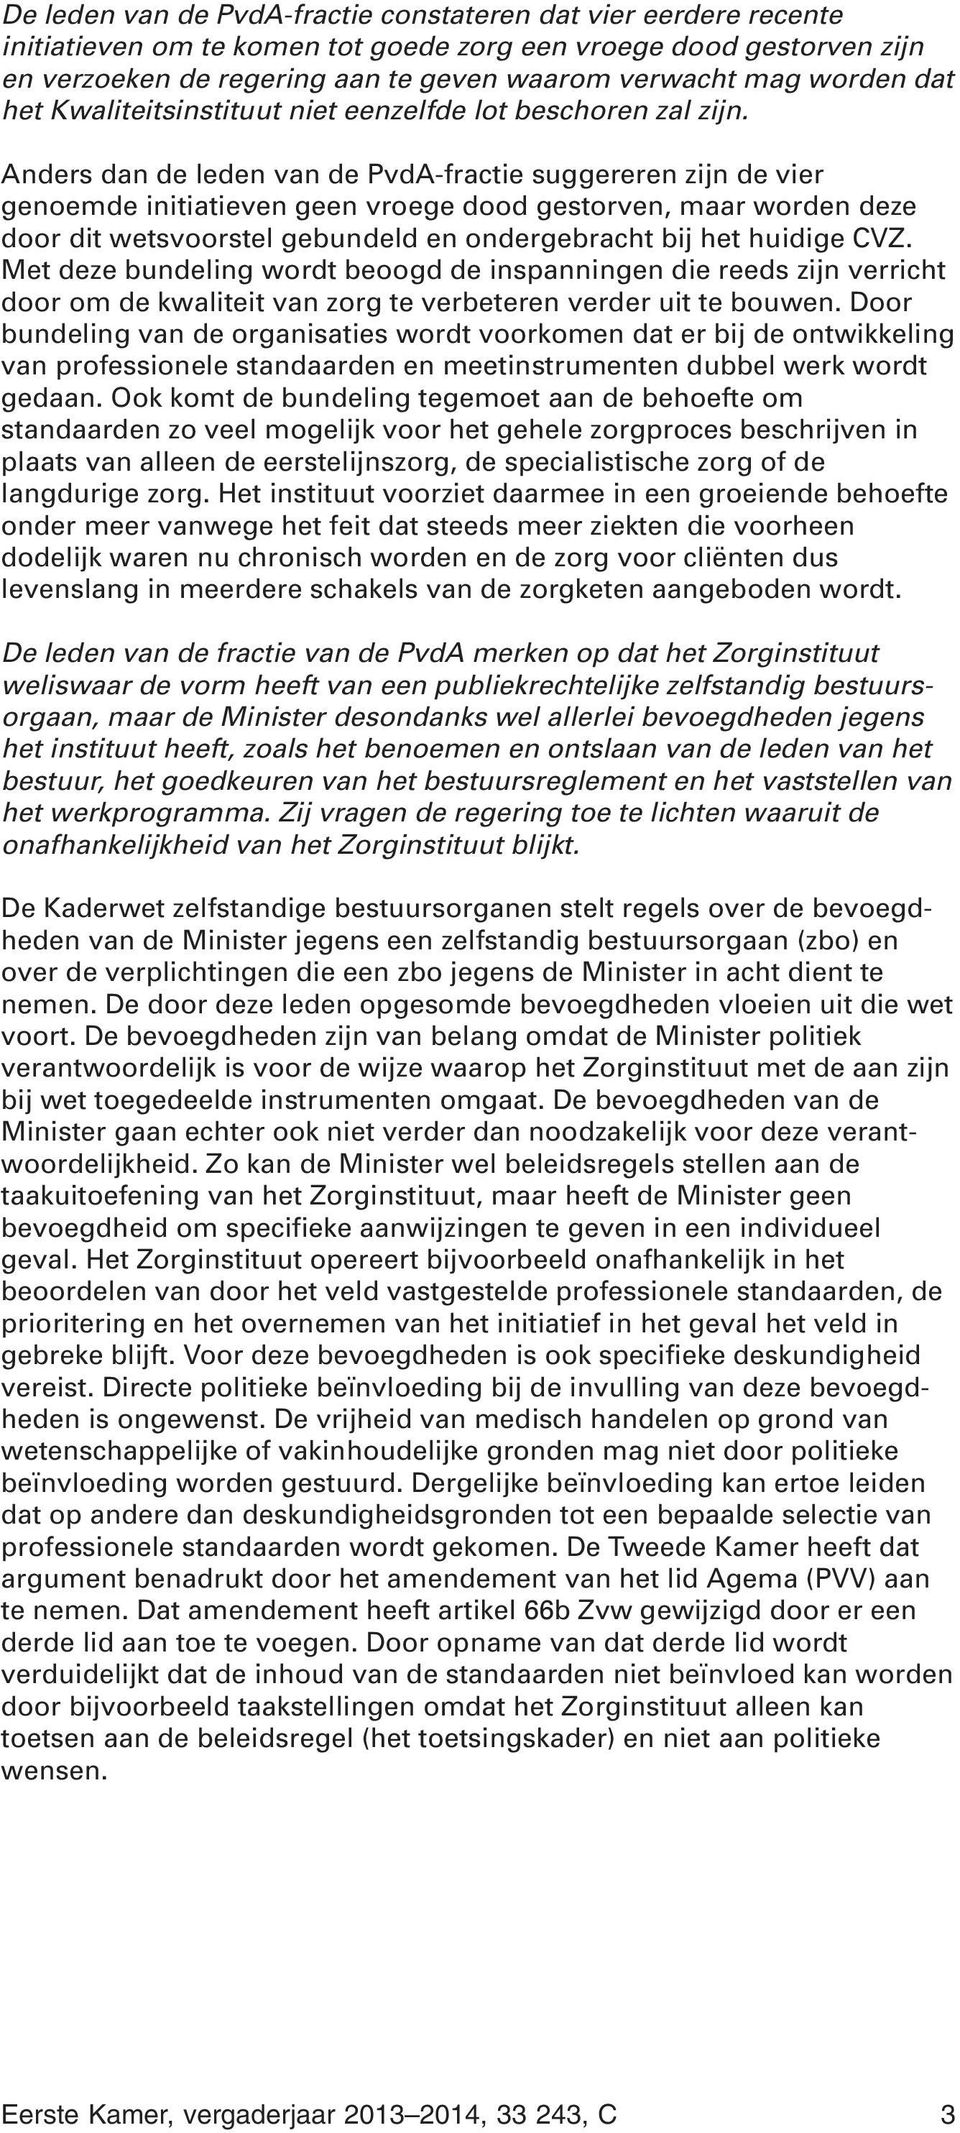 Anders dan de leden van de PvdA-fractie suggereren zijn de vier genoemde initiatieven geen vroege dood gestorven, maar worden deze door dit wetsvoorstel gebundeld en ondergebracht bij het huidige CVZ.